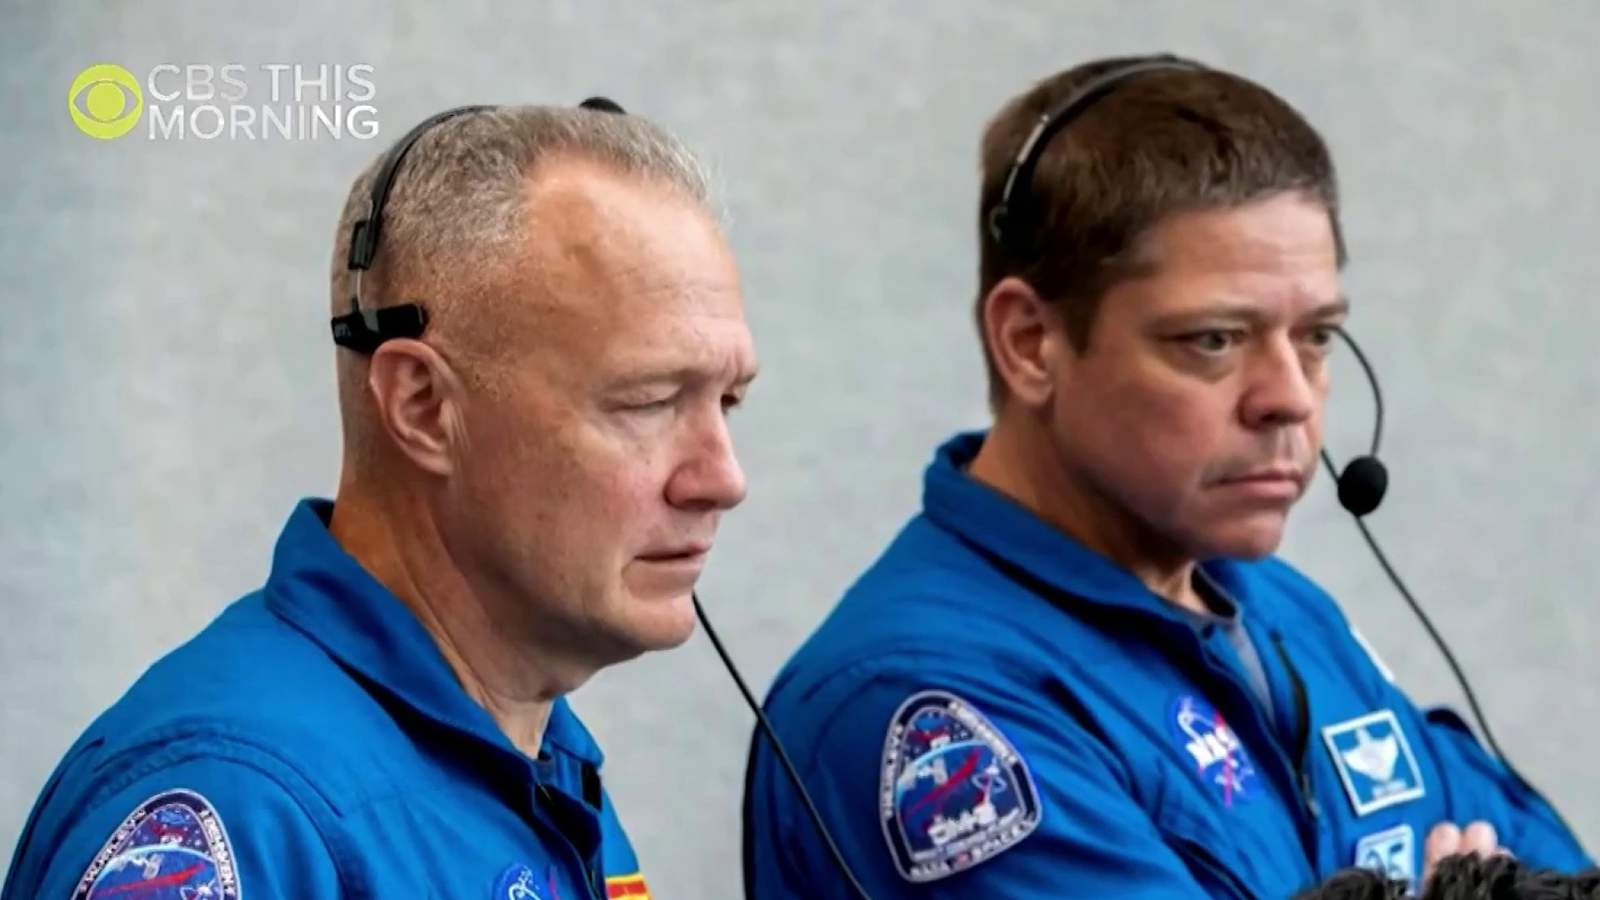 Behnken, Hurley make ‘very great crew,' former NASA astronaut says